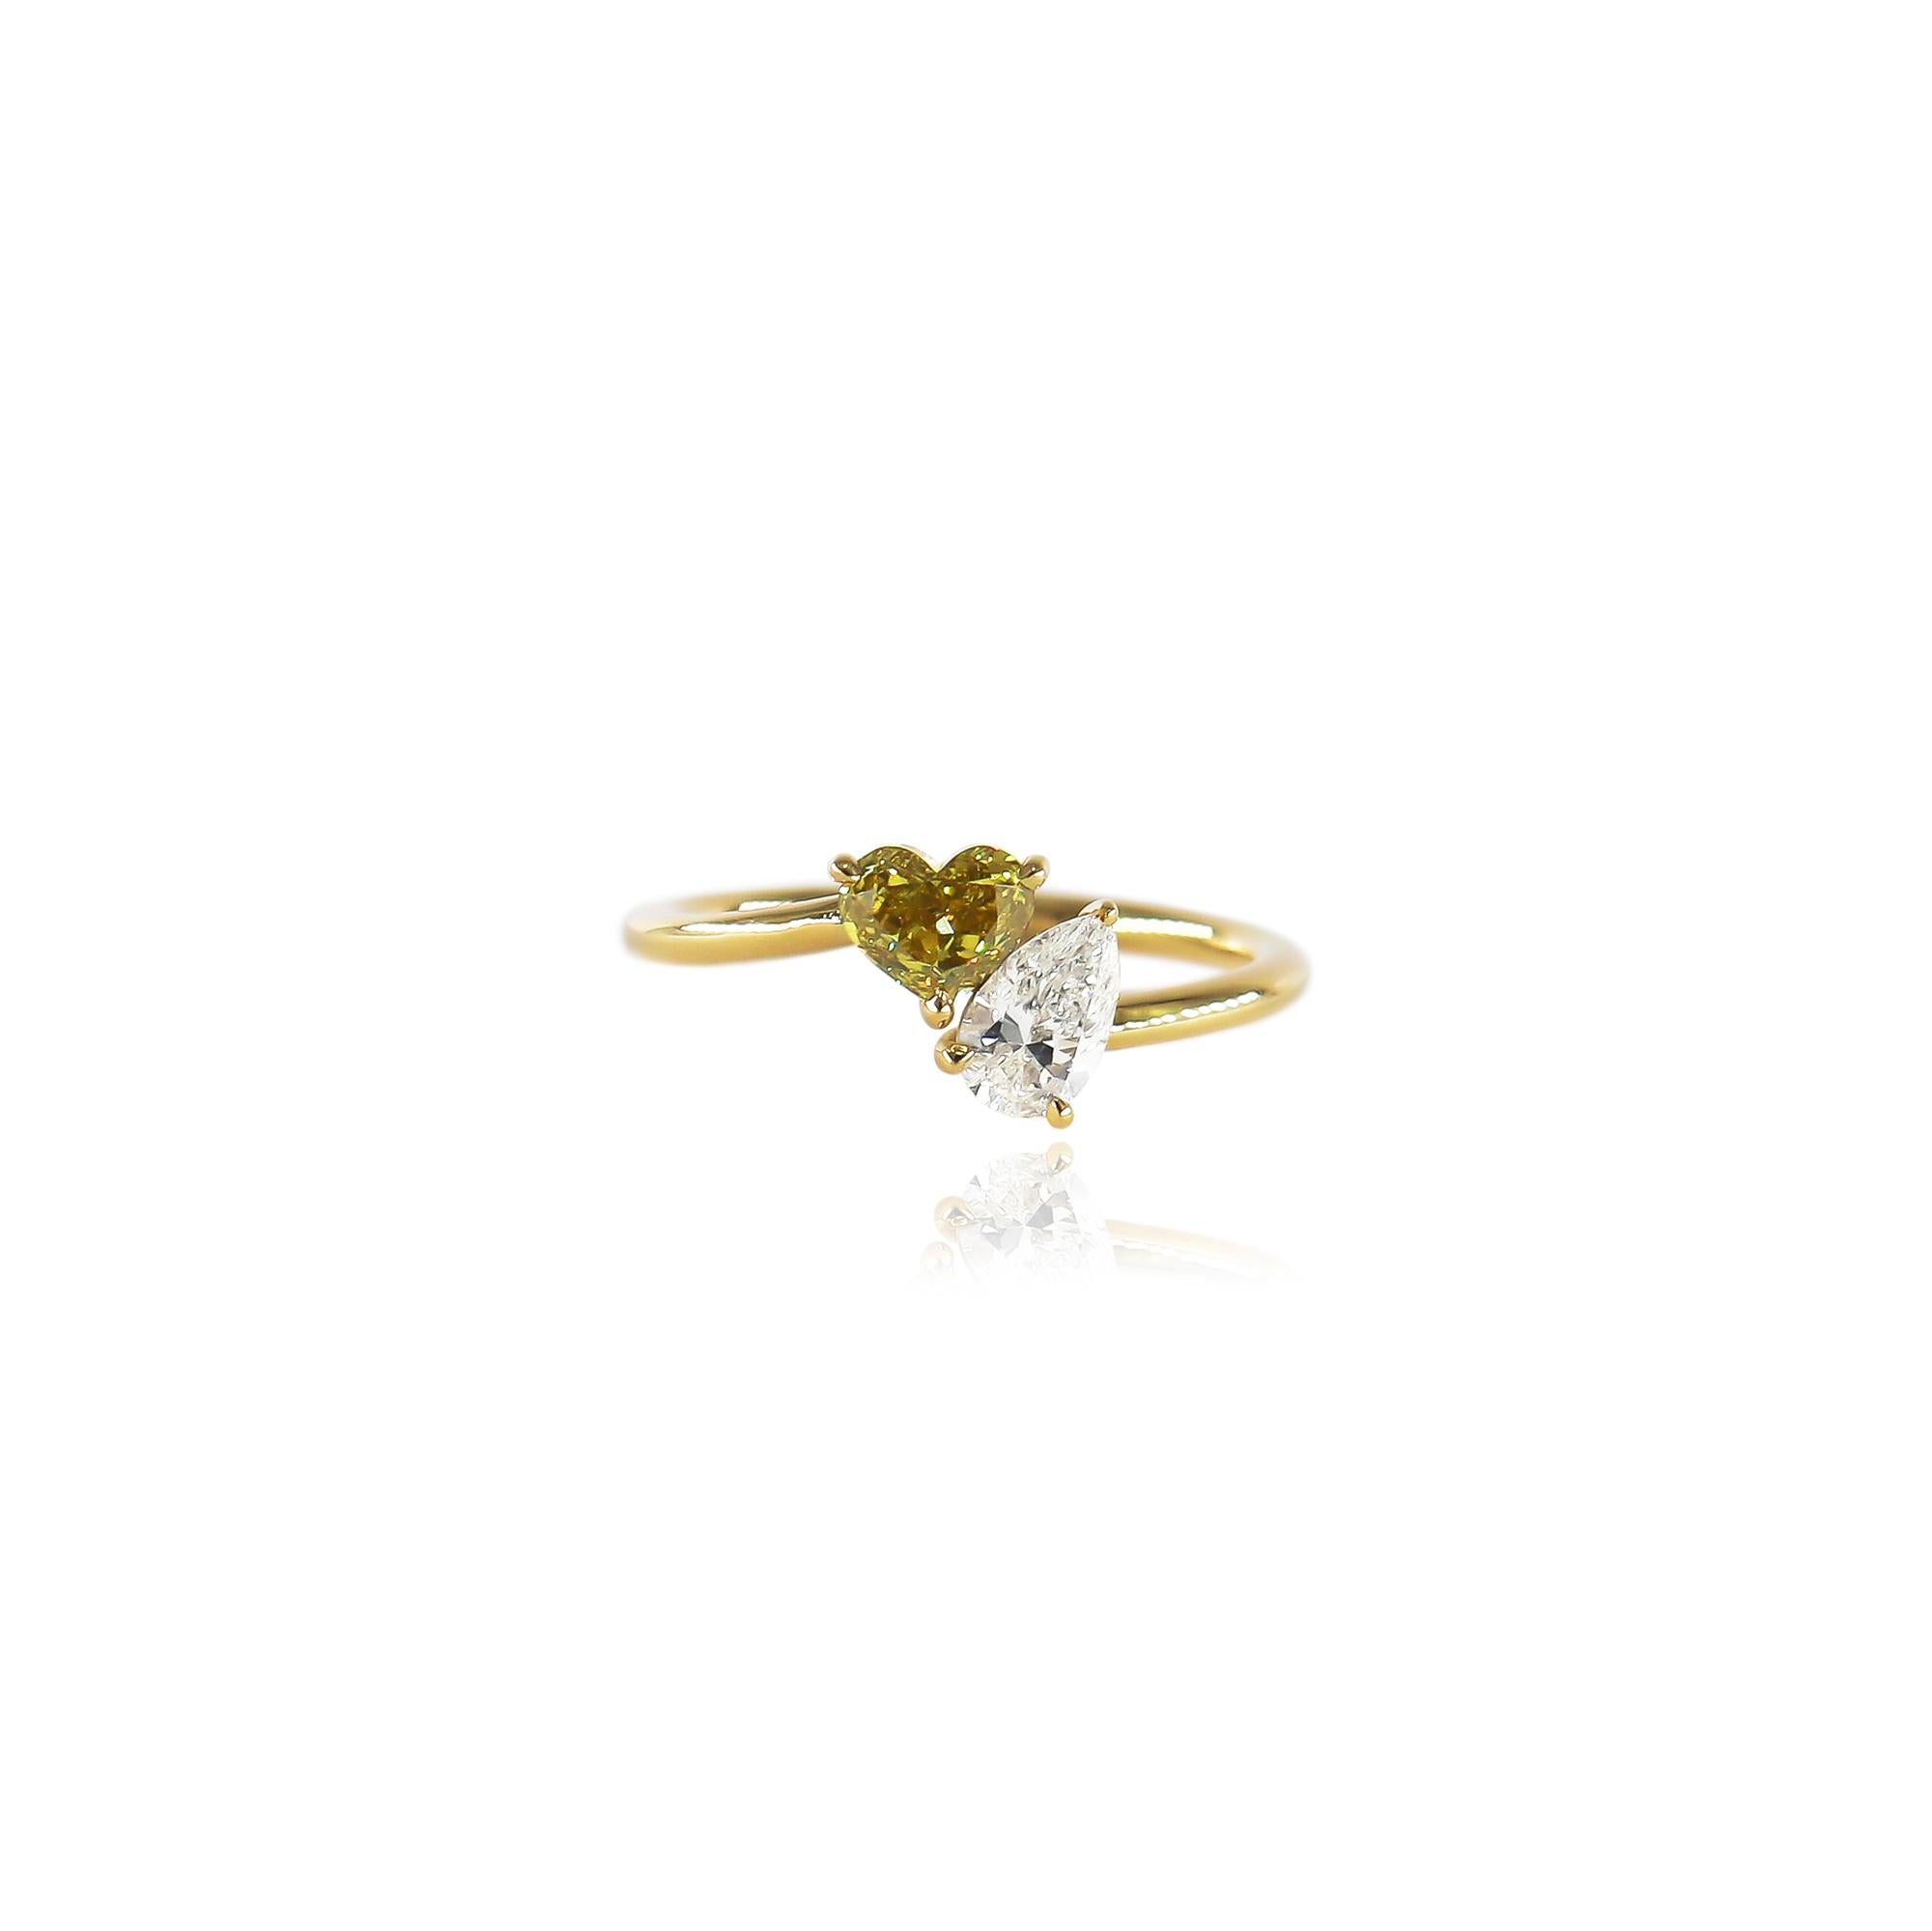 Cette jolie bague tout droit sortie de l'atelier de J. Birnbach présente un diamant en forme de cœur de 0,51 carat, de couleur jaune verdâtre et de pureté SI1, associé à un diamant en forme de poire de 0,40 carat, de couleur F et de pureté SI1. Les